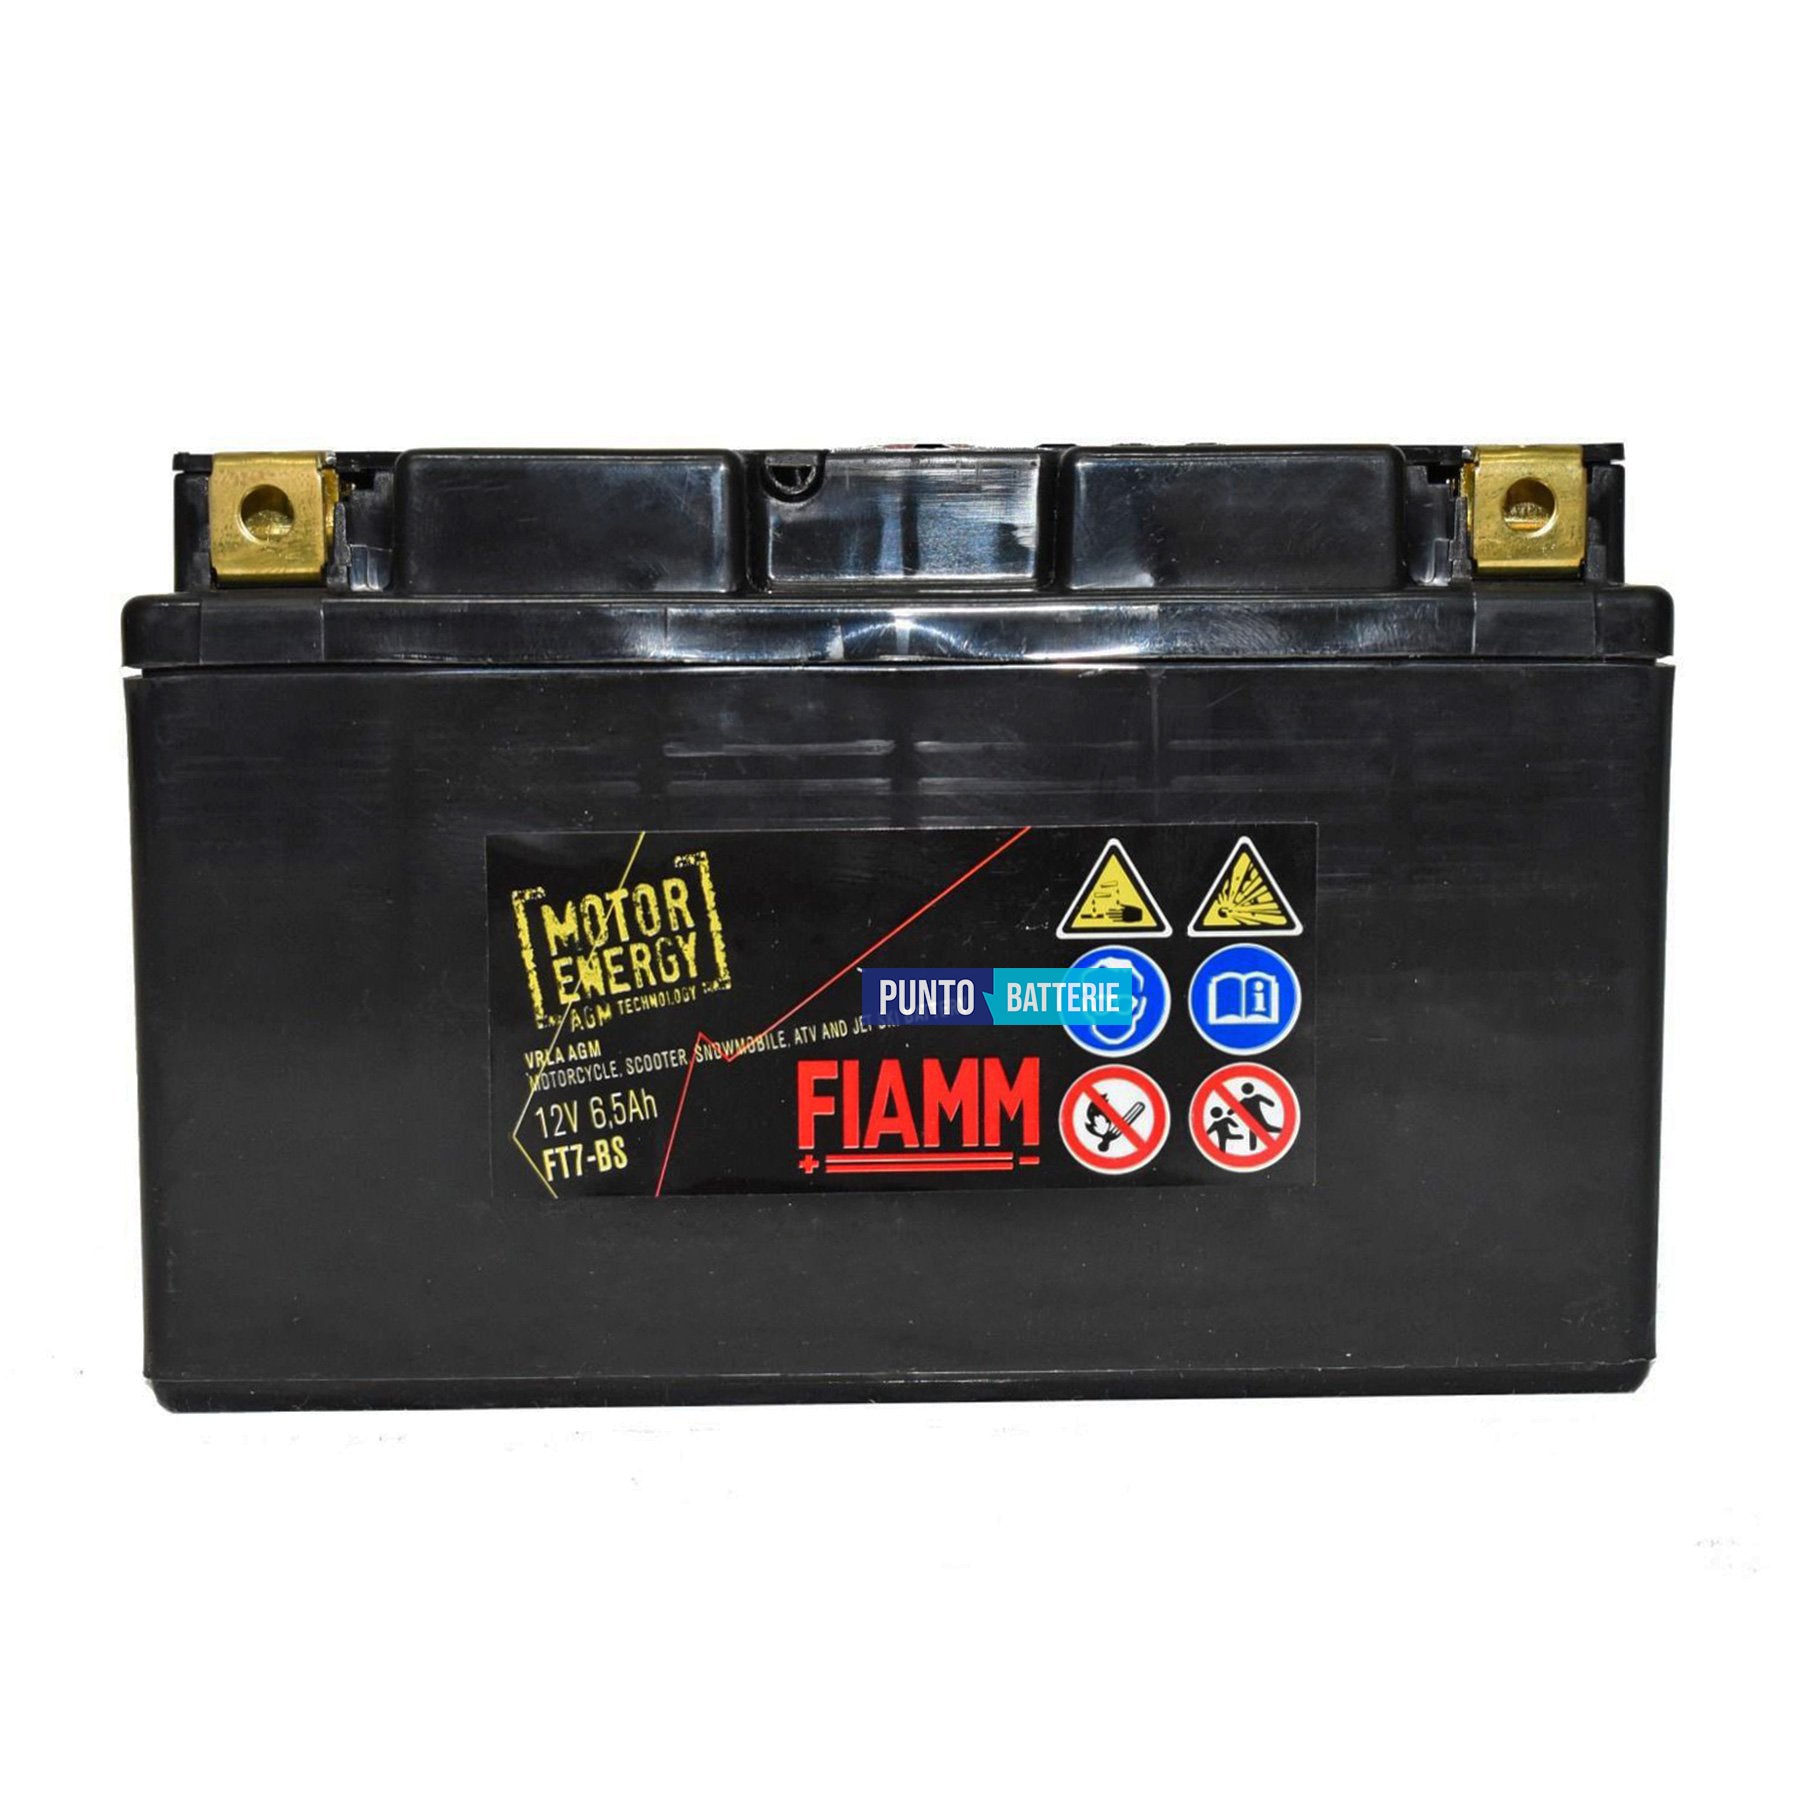 Batteria Fiamm 6Ah, 12V, 110A , 150x65x93mm